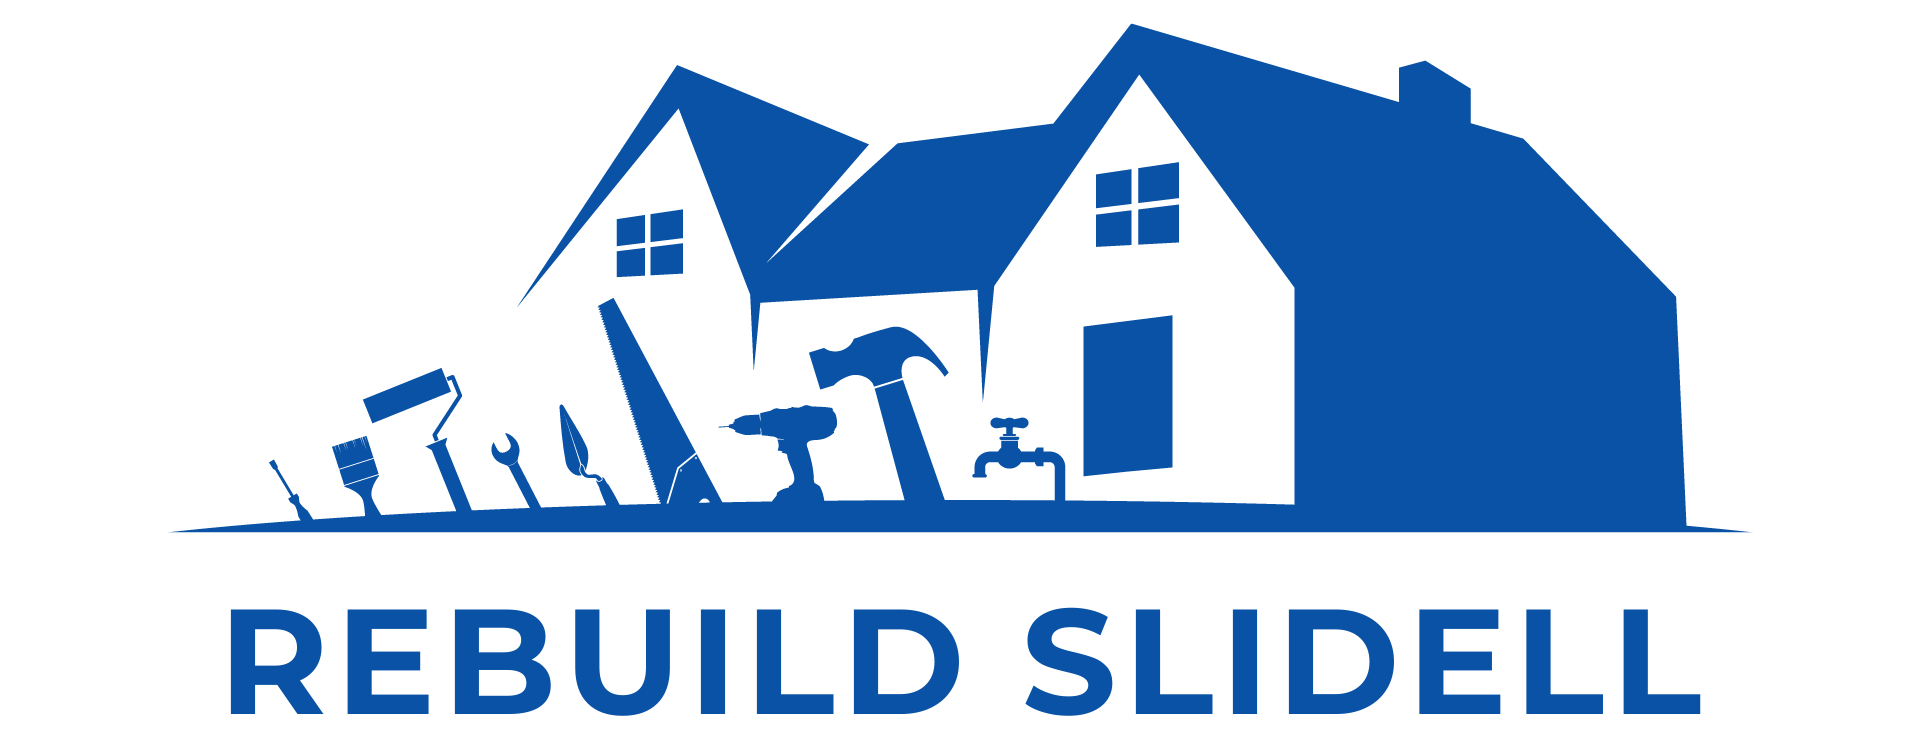 Rebuild Slidell